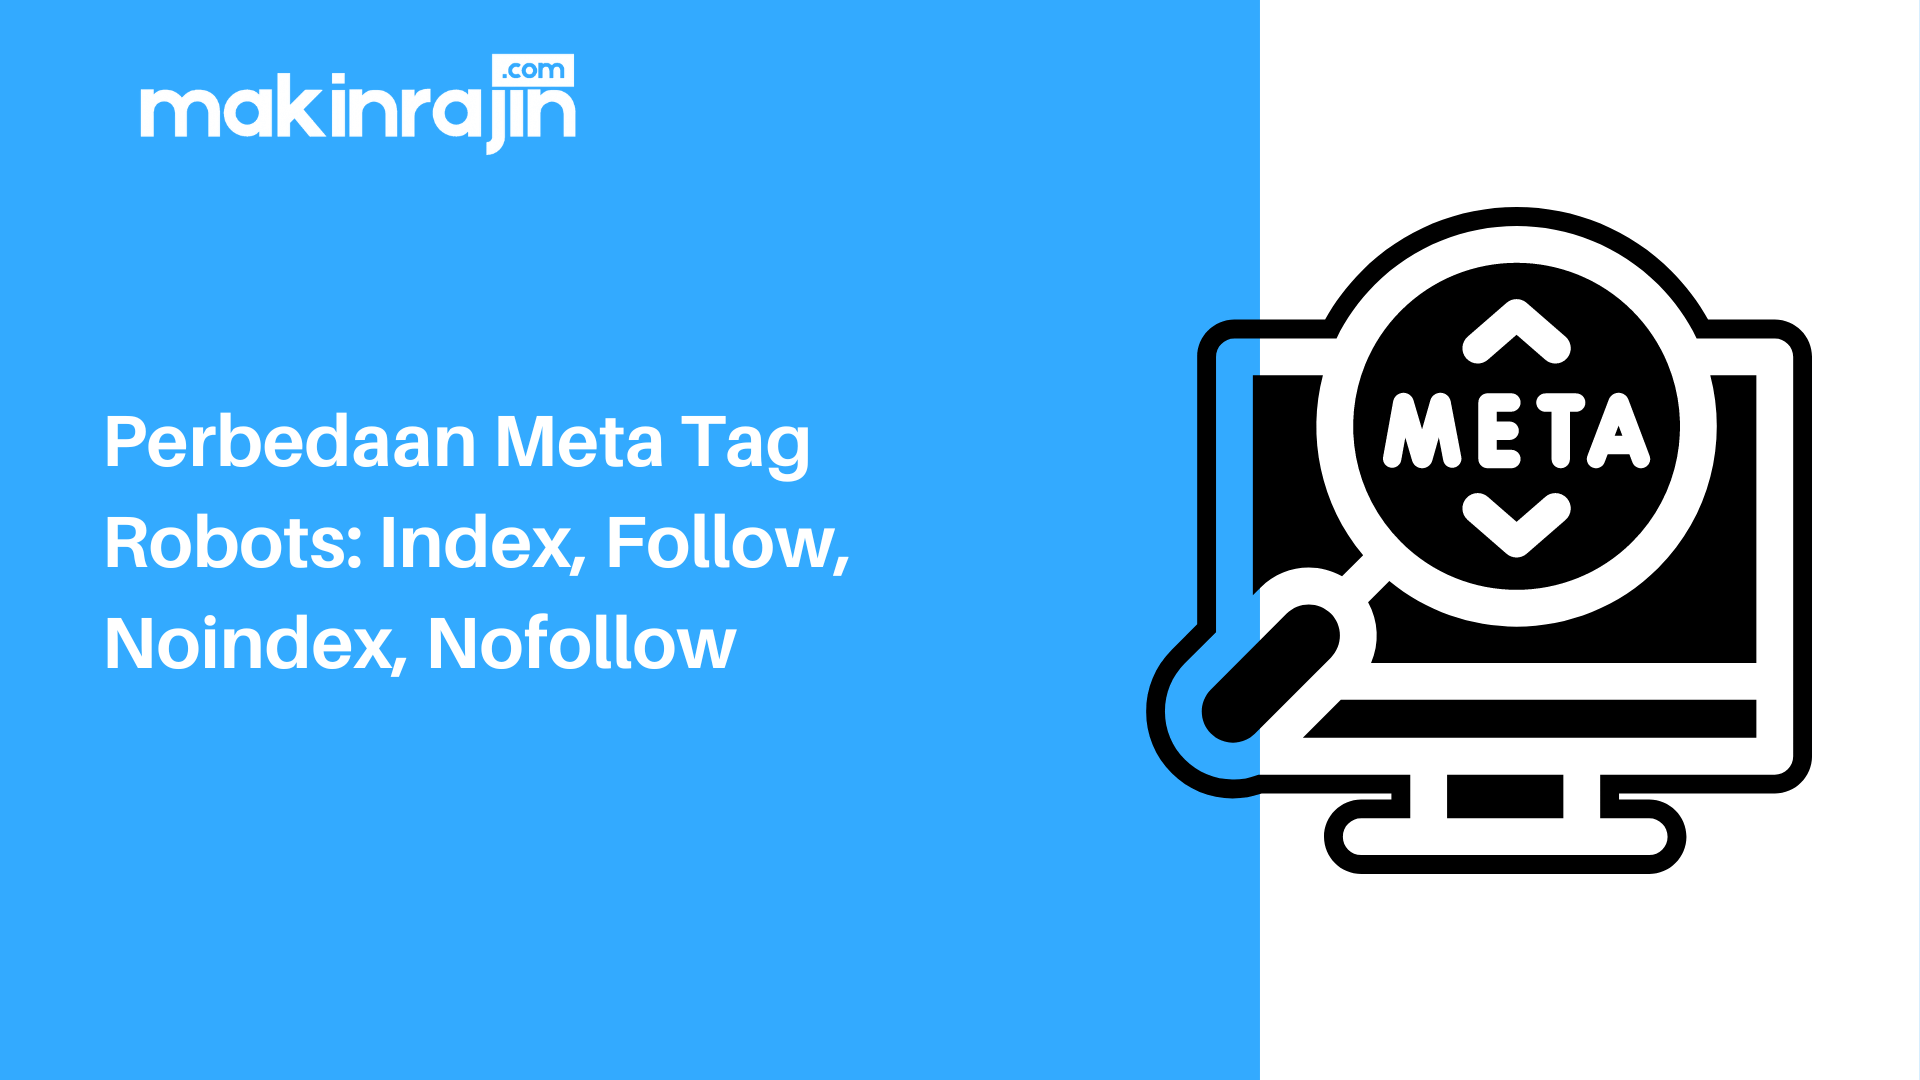 Perbedaan Meta Tag Robots: Index, Follow, Noindex, Nofollow